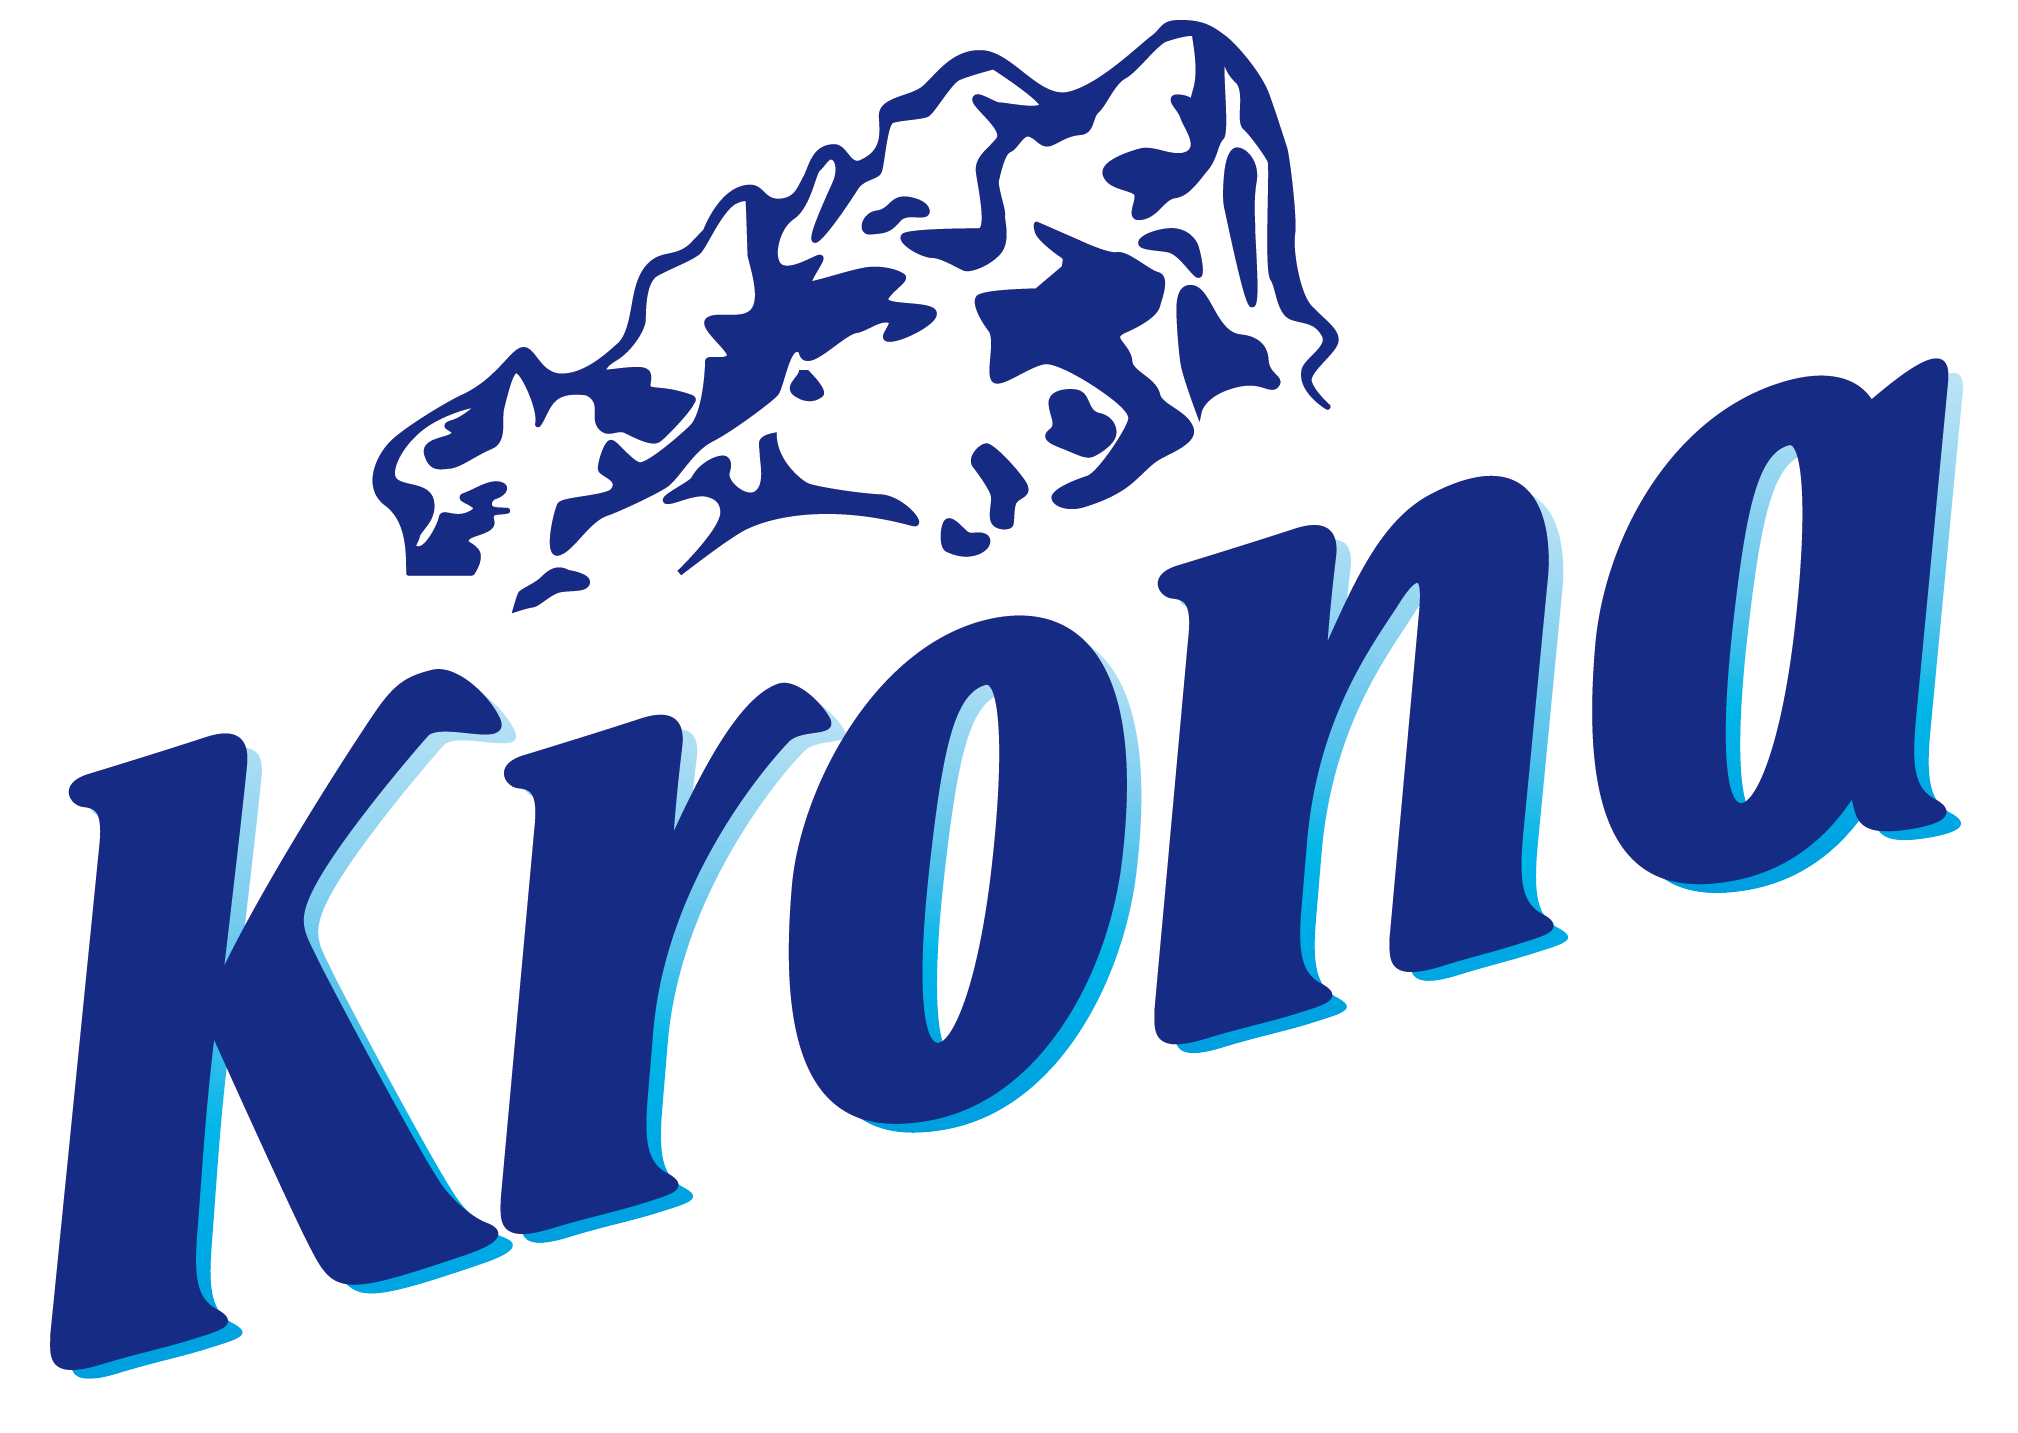 Logo de Krona. Alternativa a la nata No.1 en ventas